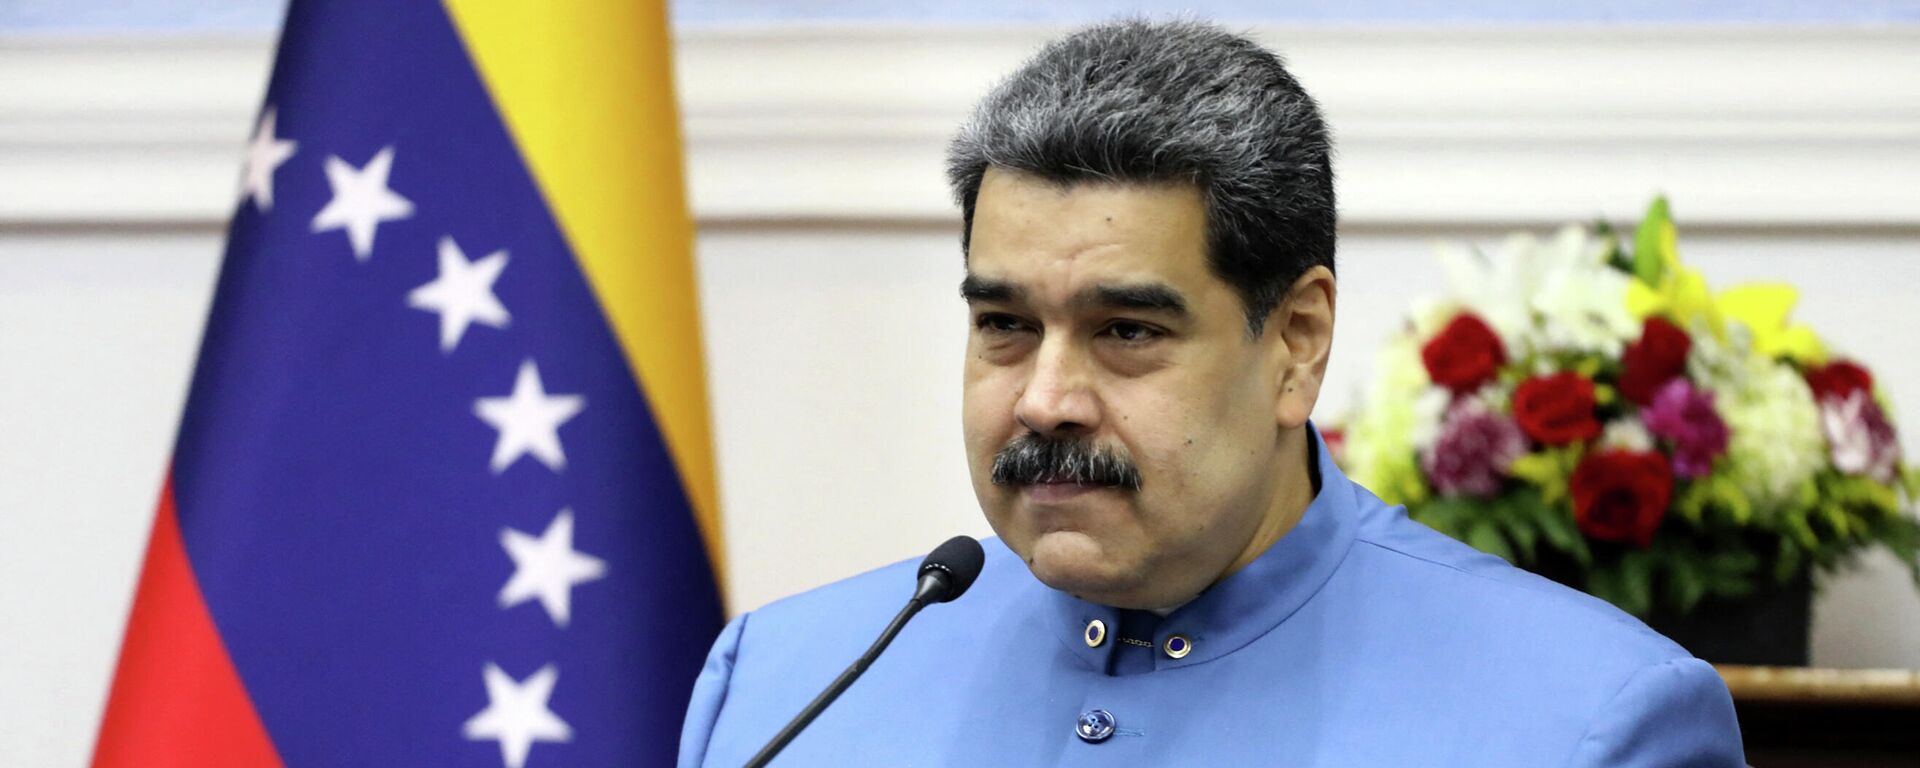 Nicolás Maduro, presidente de Venezuela - Sputnik Mundo, 1920, 03.09.2021